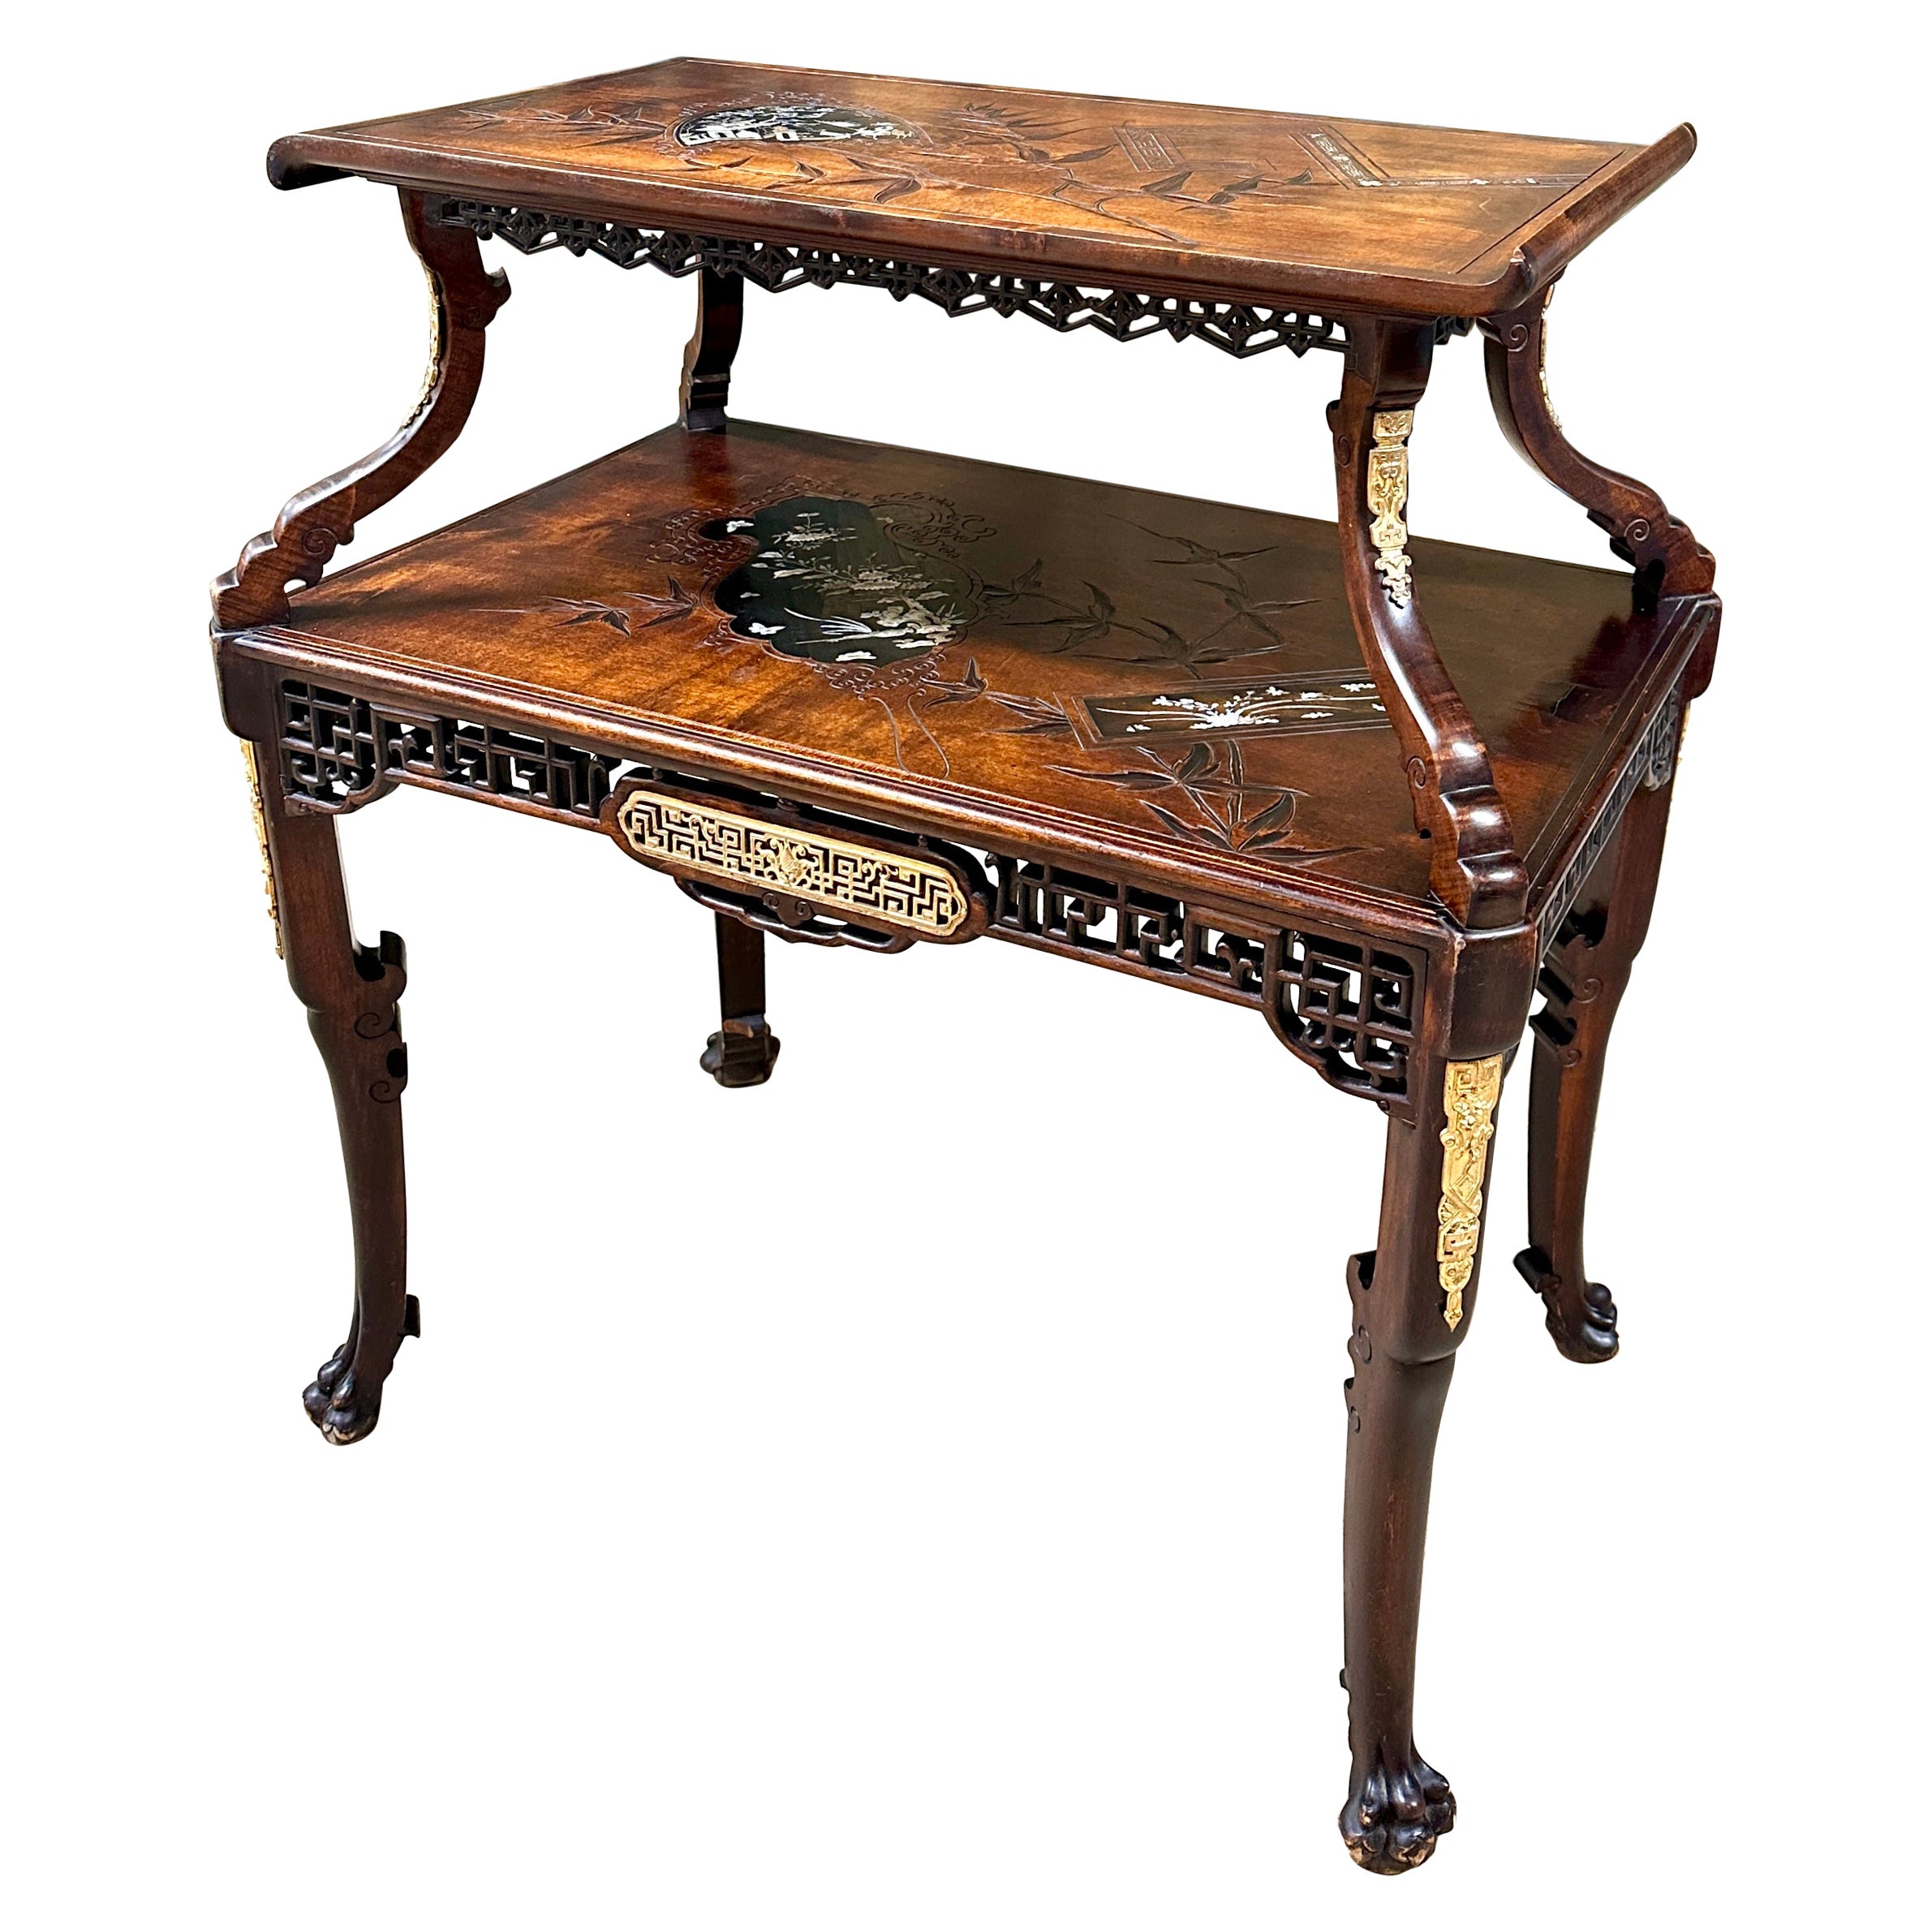 Gabriel Viardot - Table à thé en Wood Wood sculpté, Napoléon III